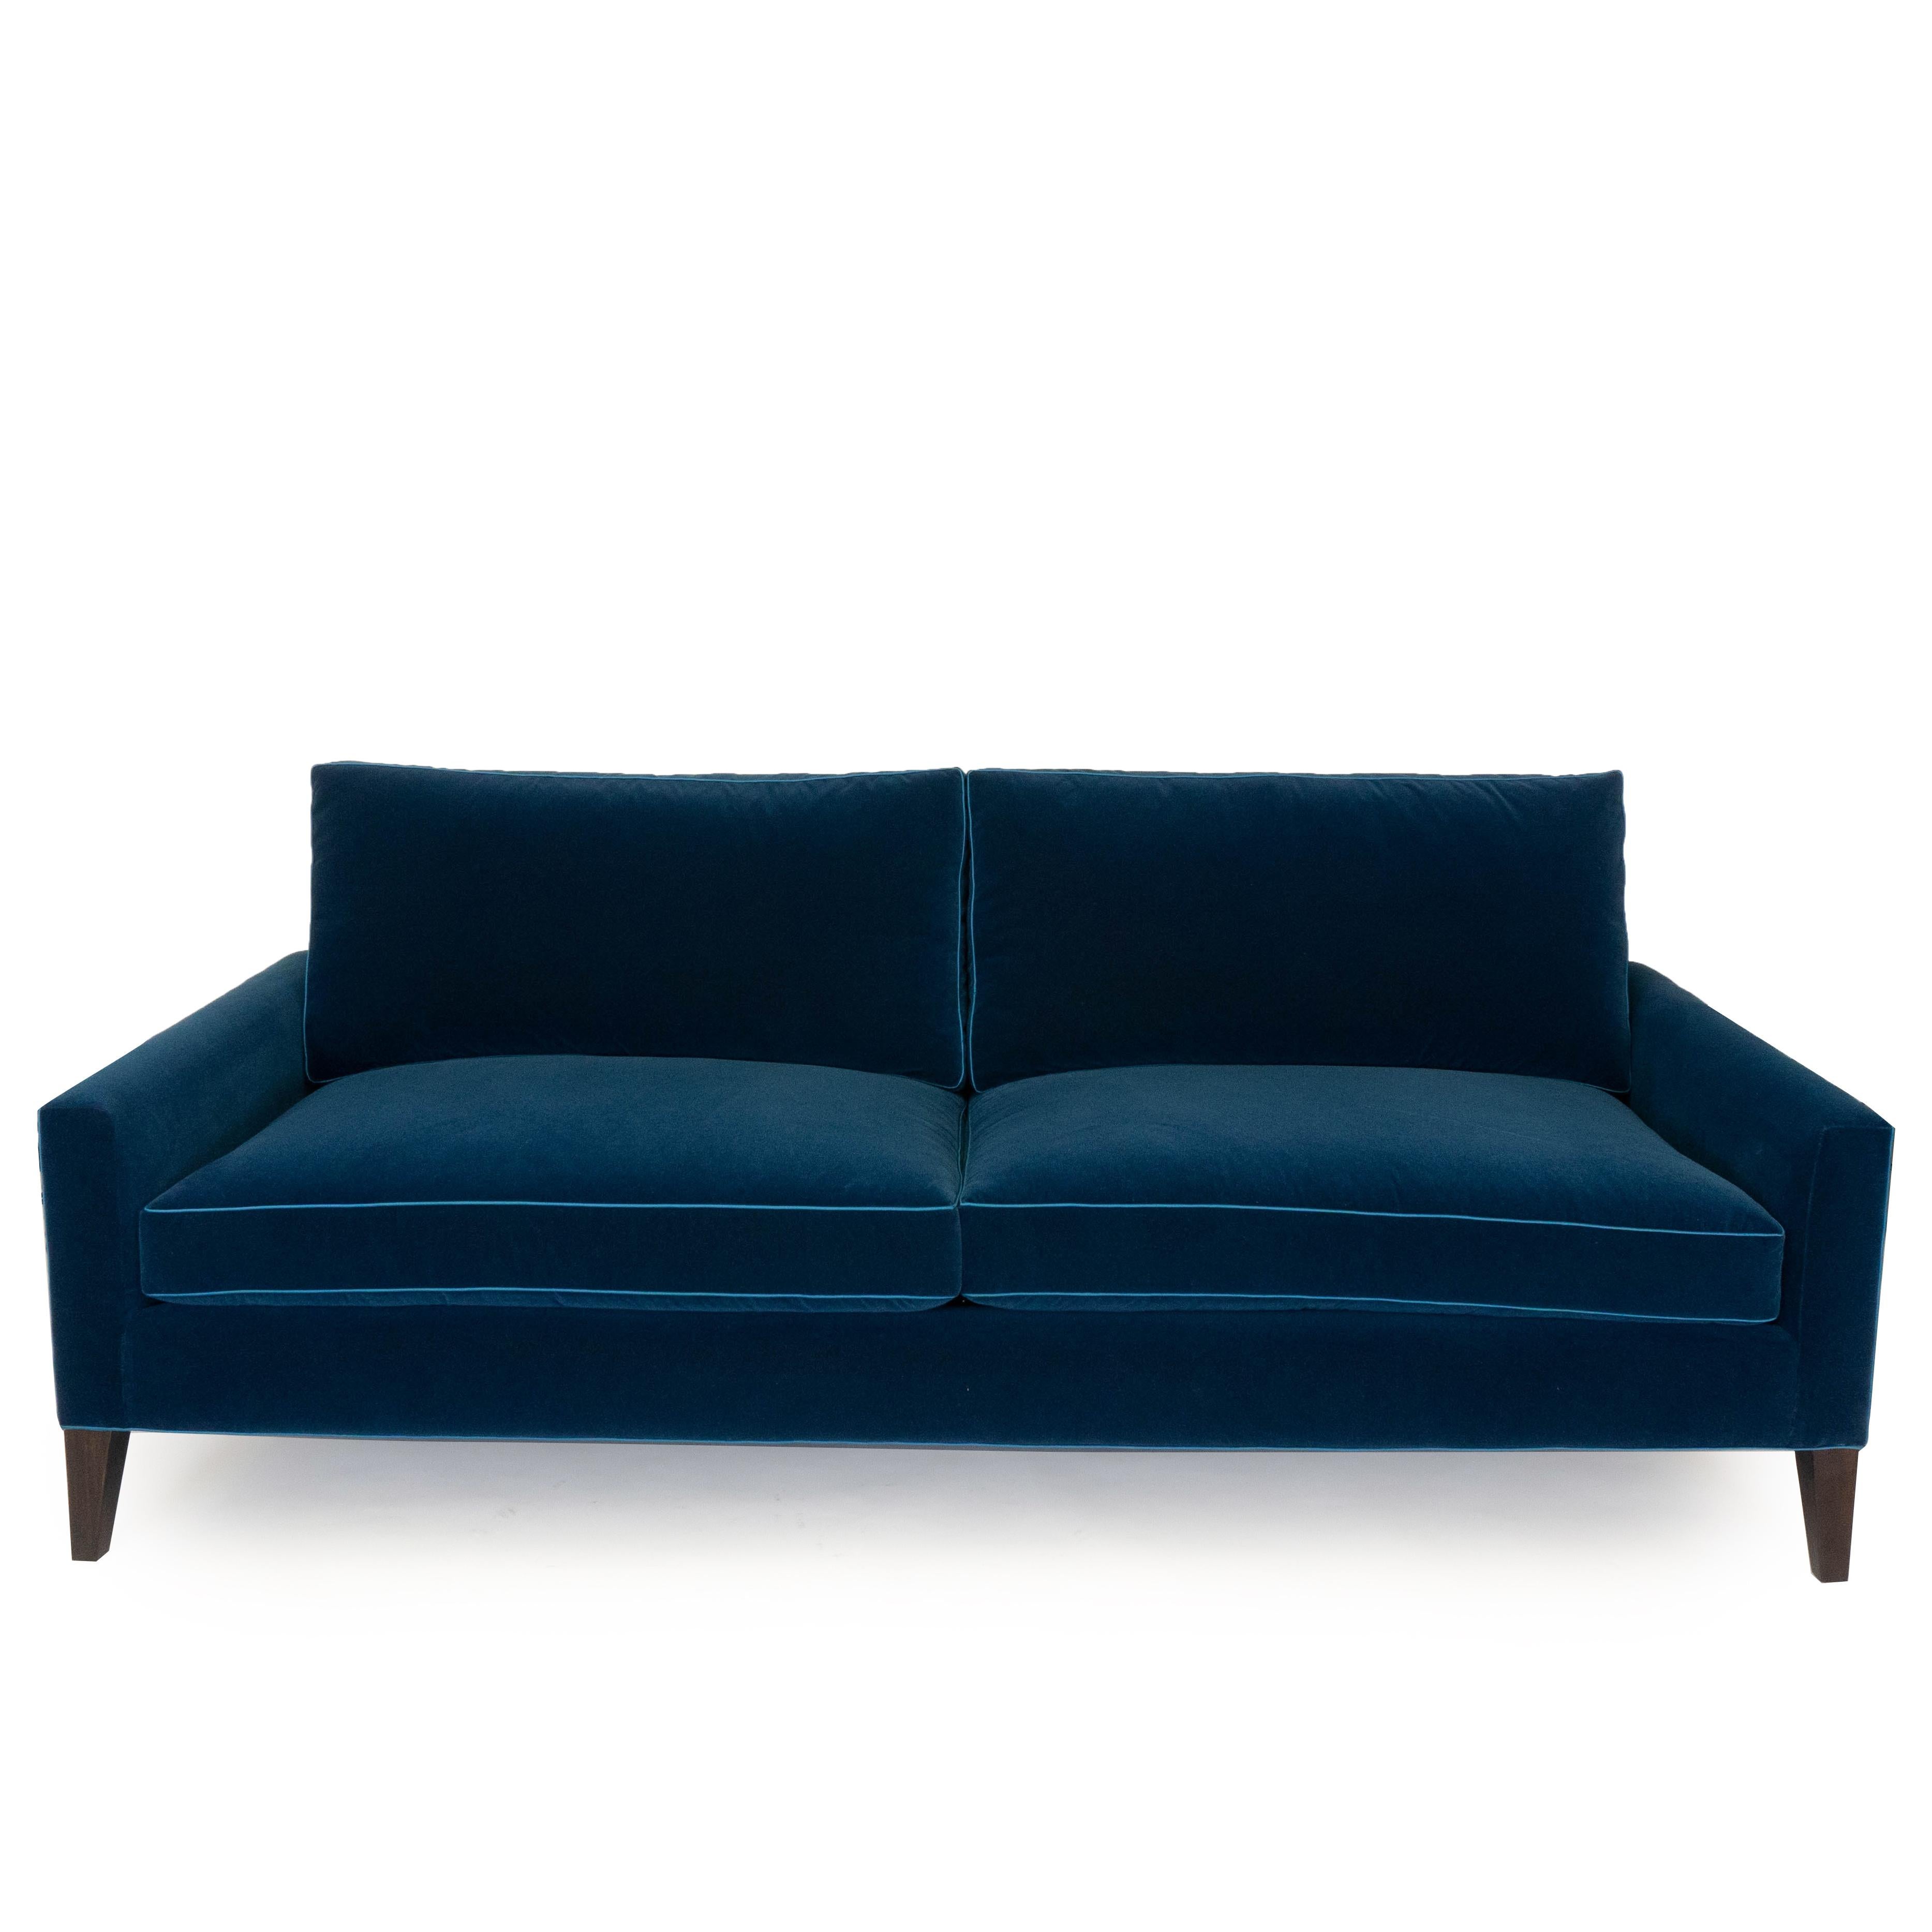 Notre canapé moderne à deux coussins est tapissé d'un velours bleu foncé avec un toucher coton infini et comporte une bordure en polyester bleu clair. Ce canapé est fabriqué à la main avec du bois de peuplier et fini avec un pied peint en noyer